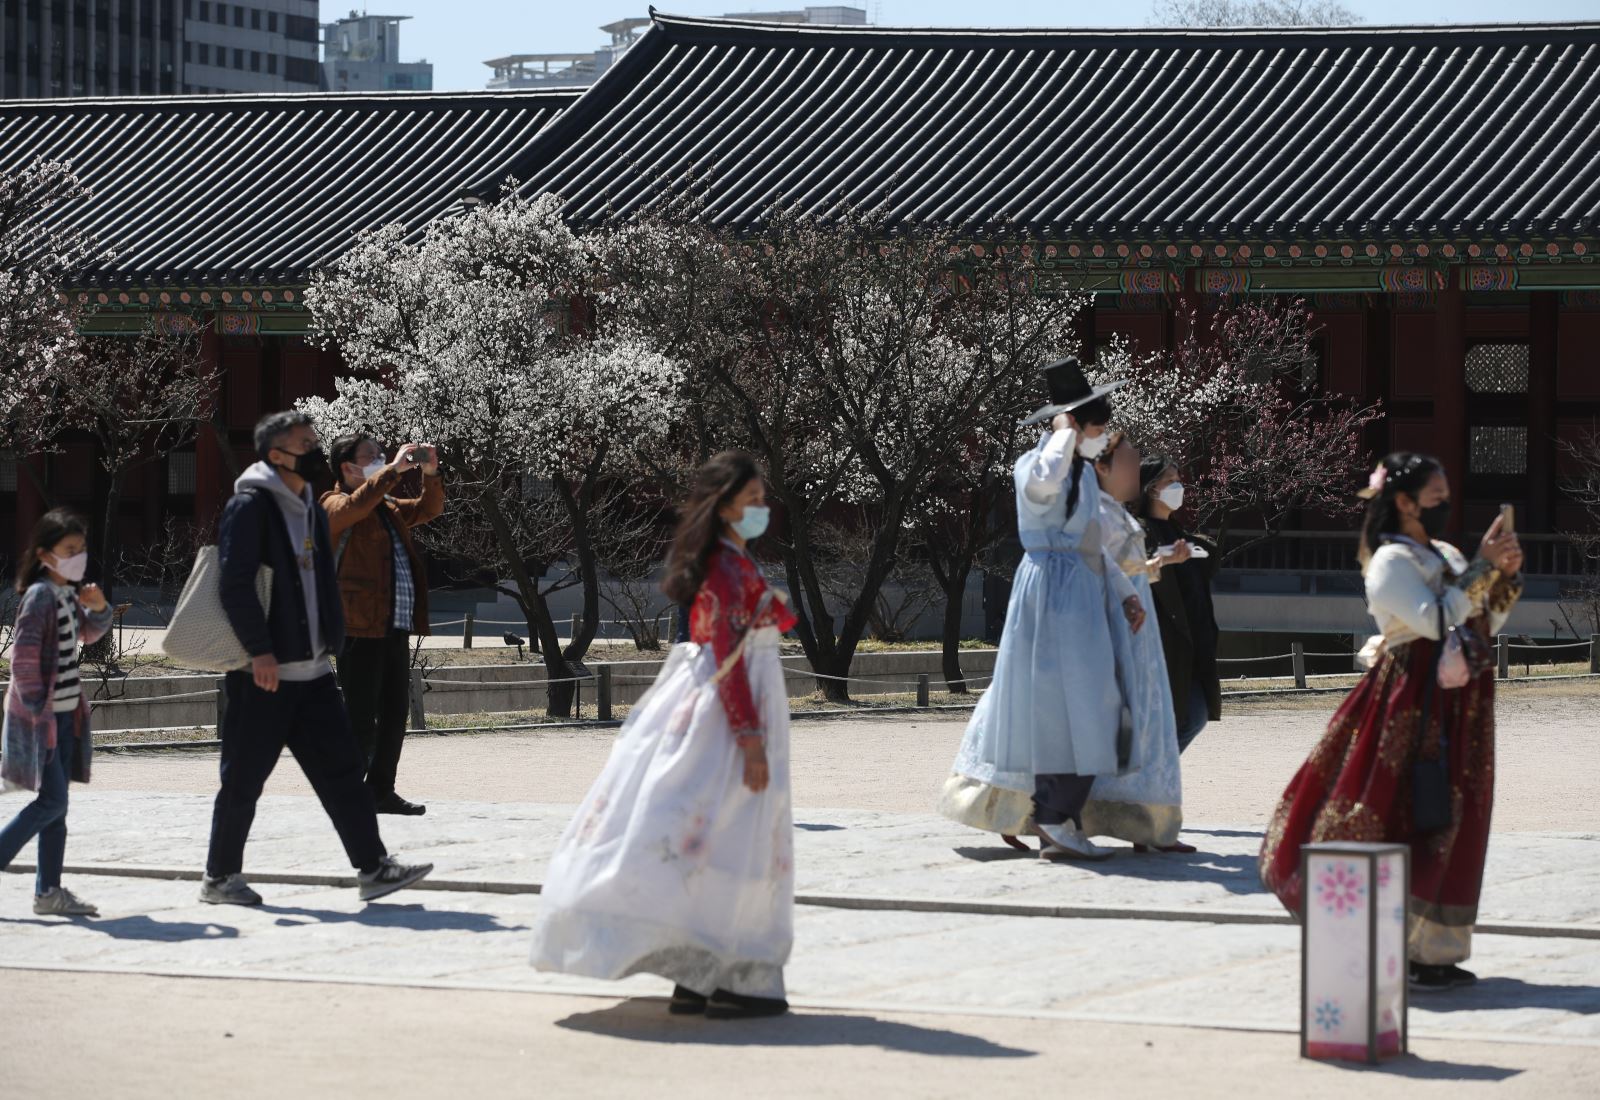 Du khách đeo khẩu trang để phòng tránh lây nhiễm COVID-19 tại Seoul, Hàn Quốc, ngày 22/3/2020